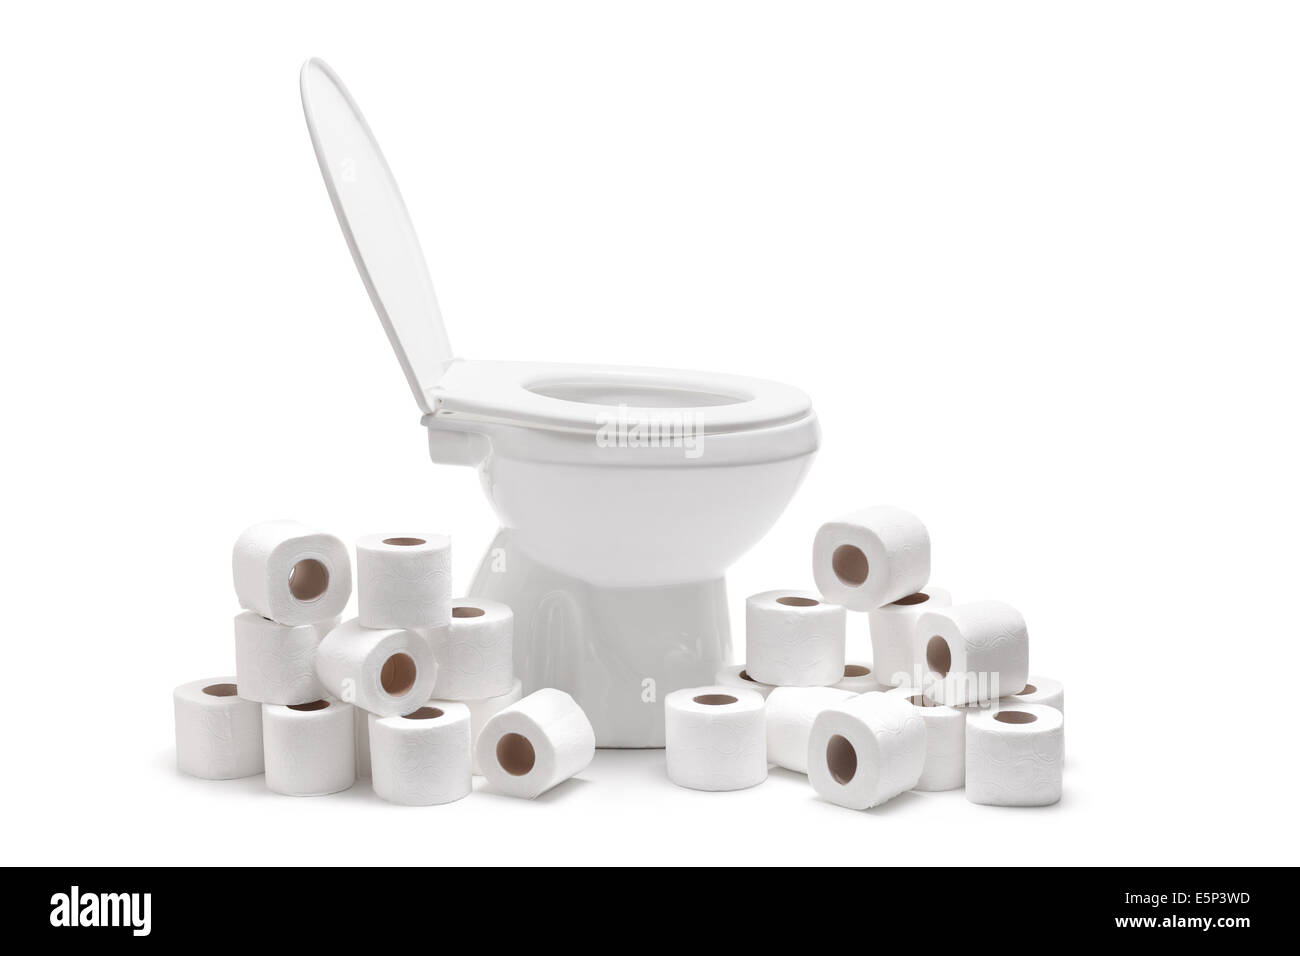 De nombreux rouleaux de papier toilettes autour d'une cuvette des toilettes Banque D'Images